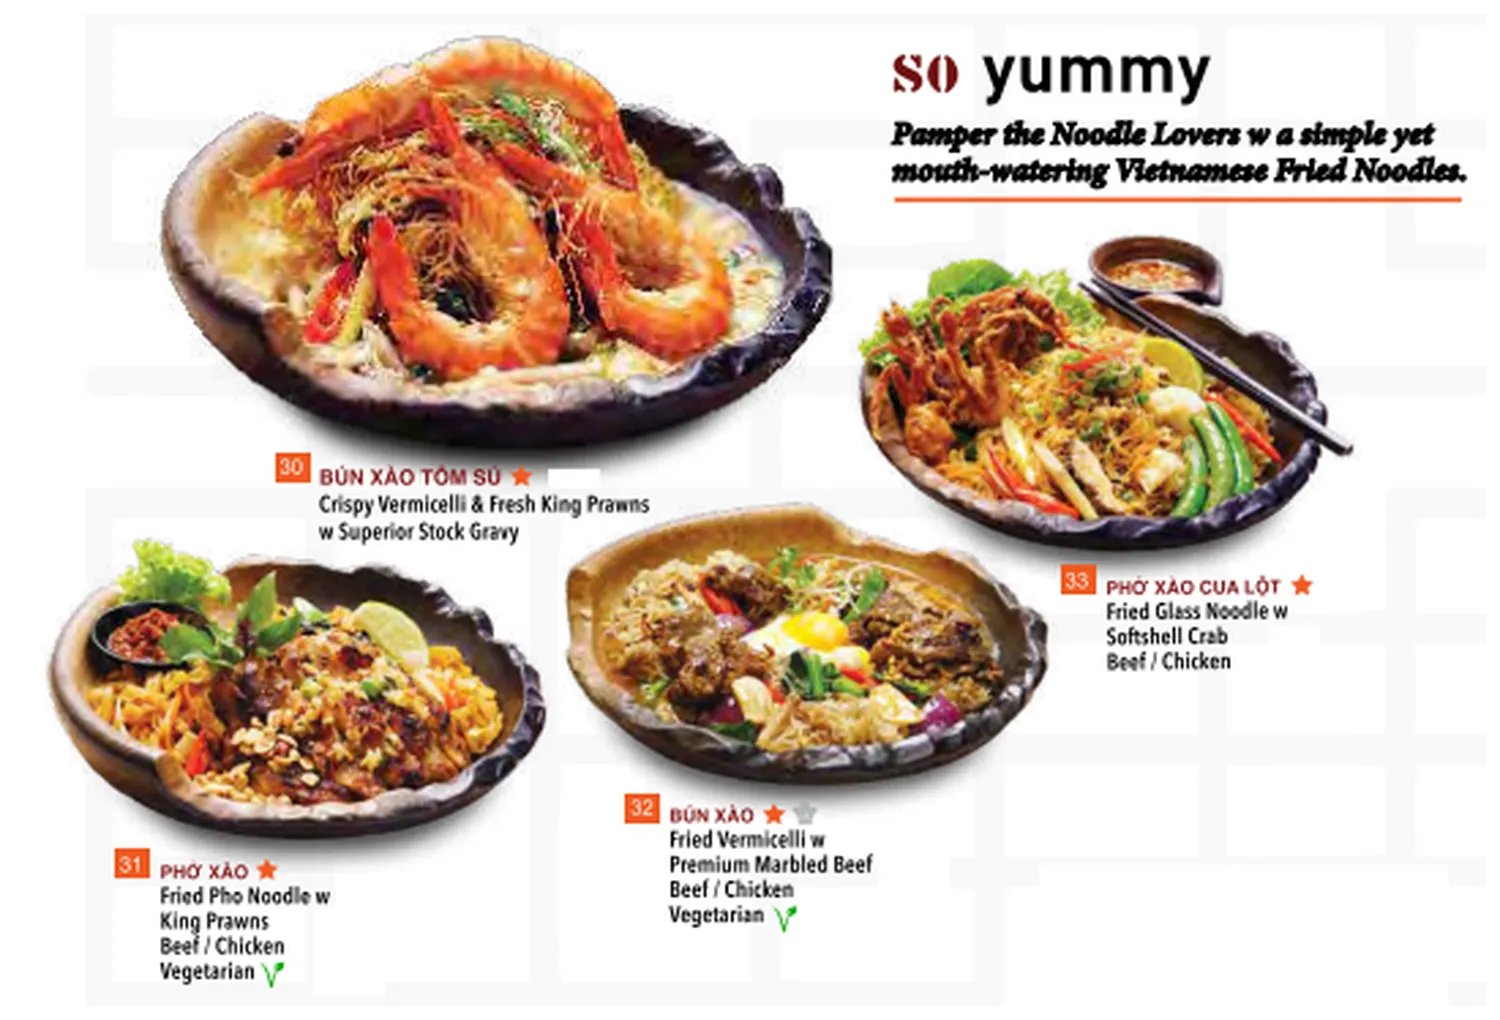 so pho menu singapore so yummy